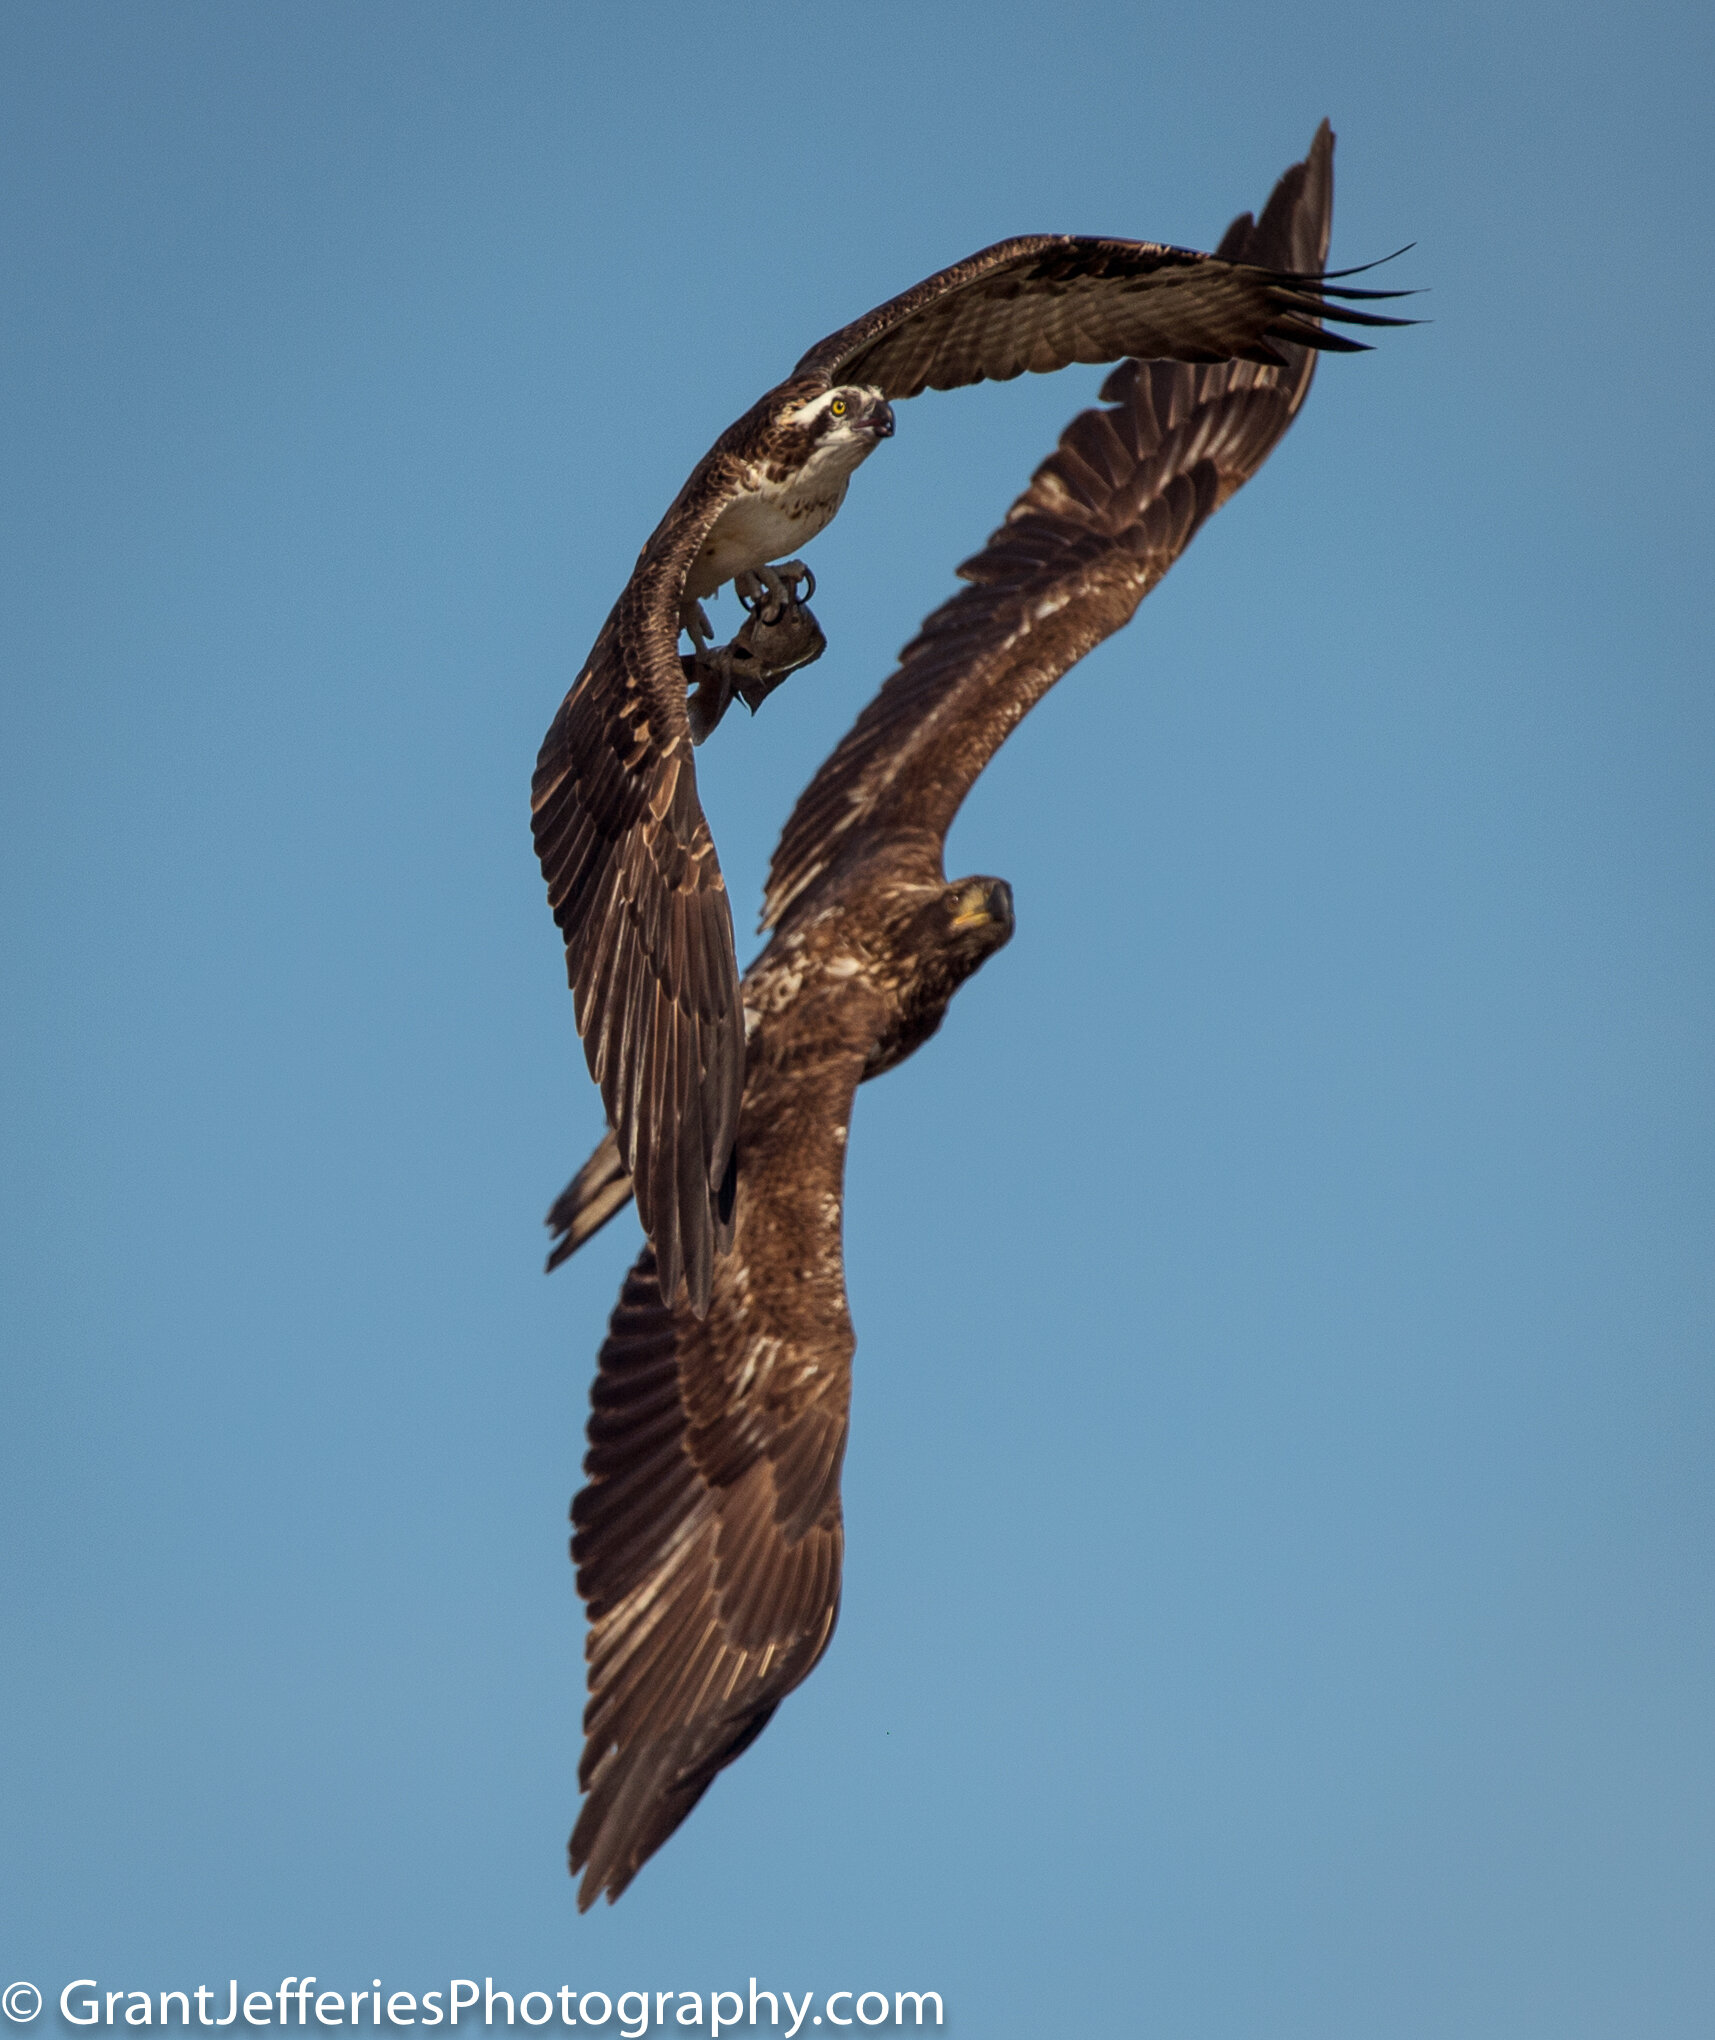 Robinson_eagle_osprey_3822.jpg